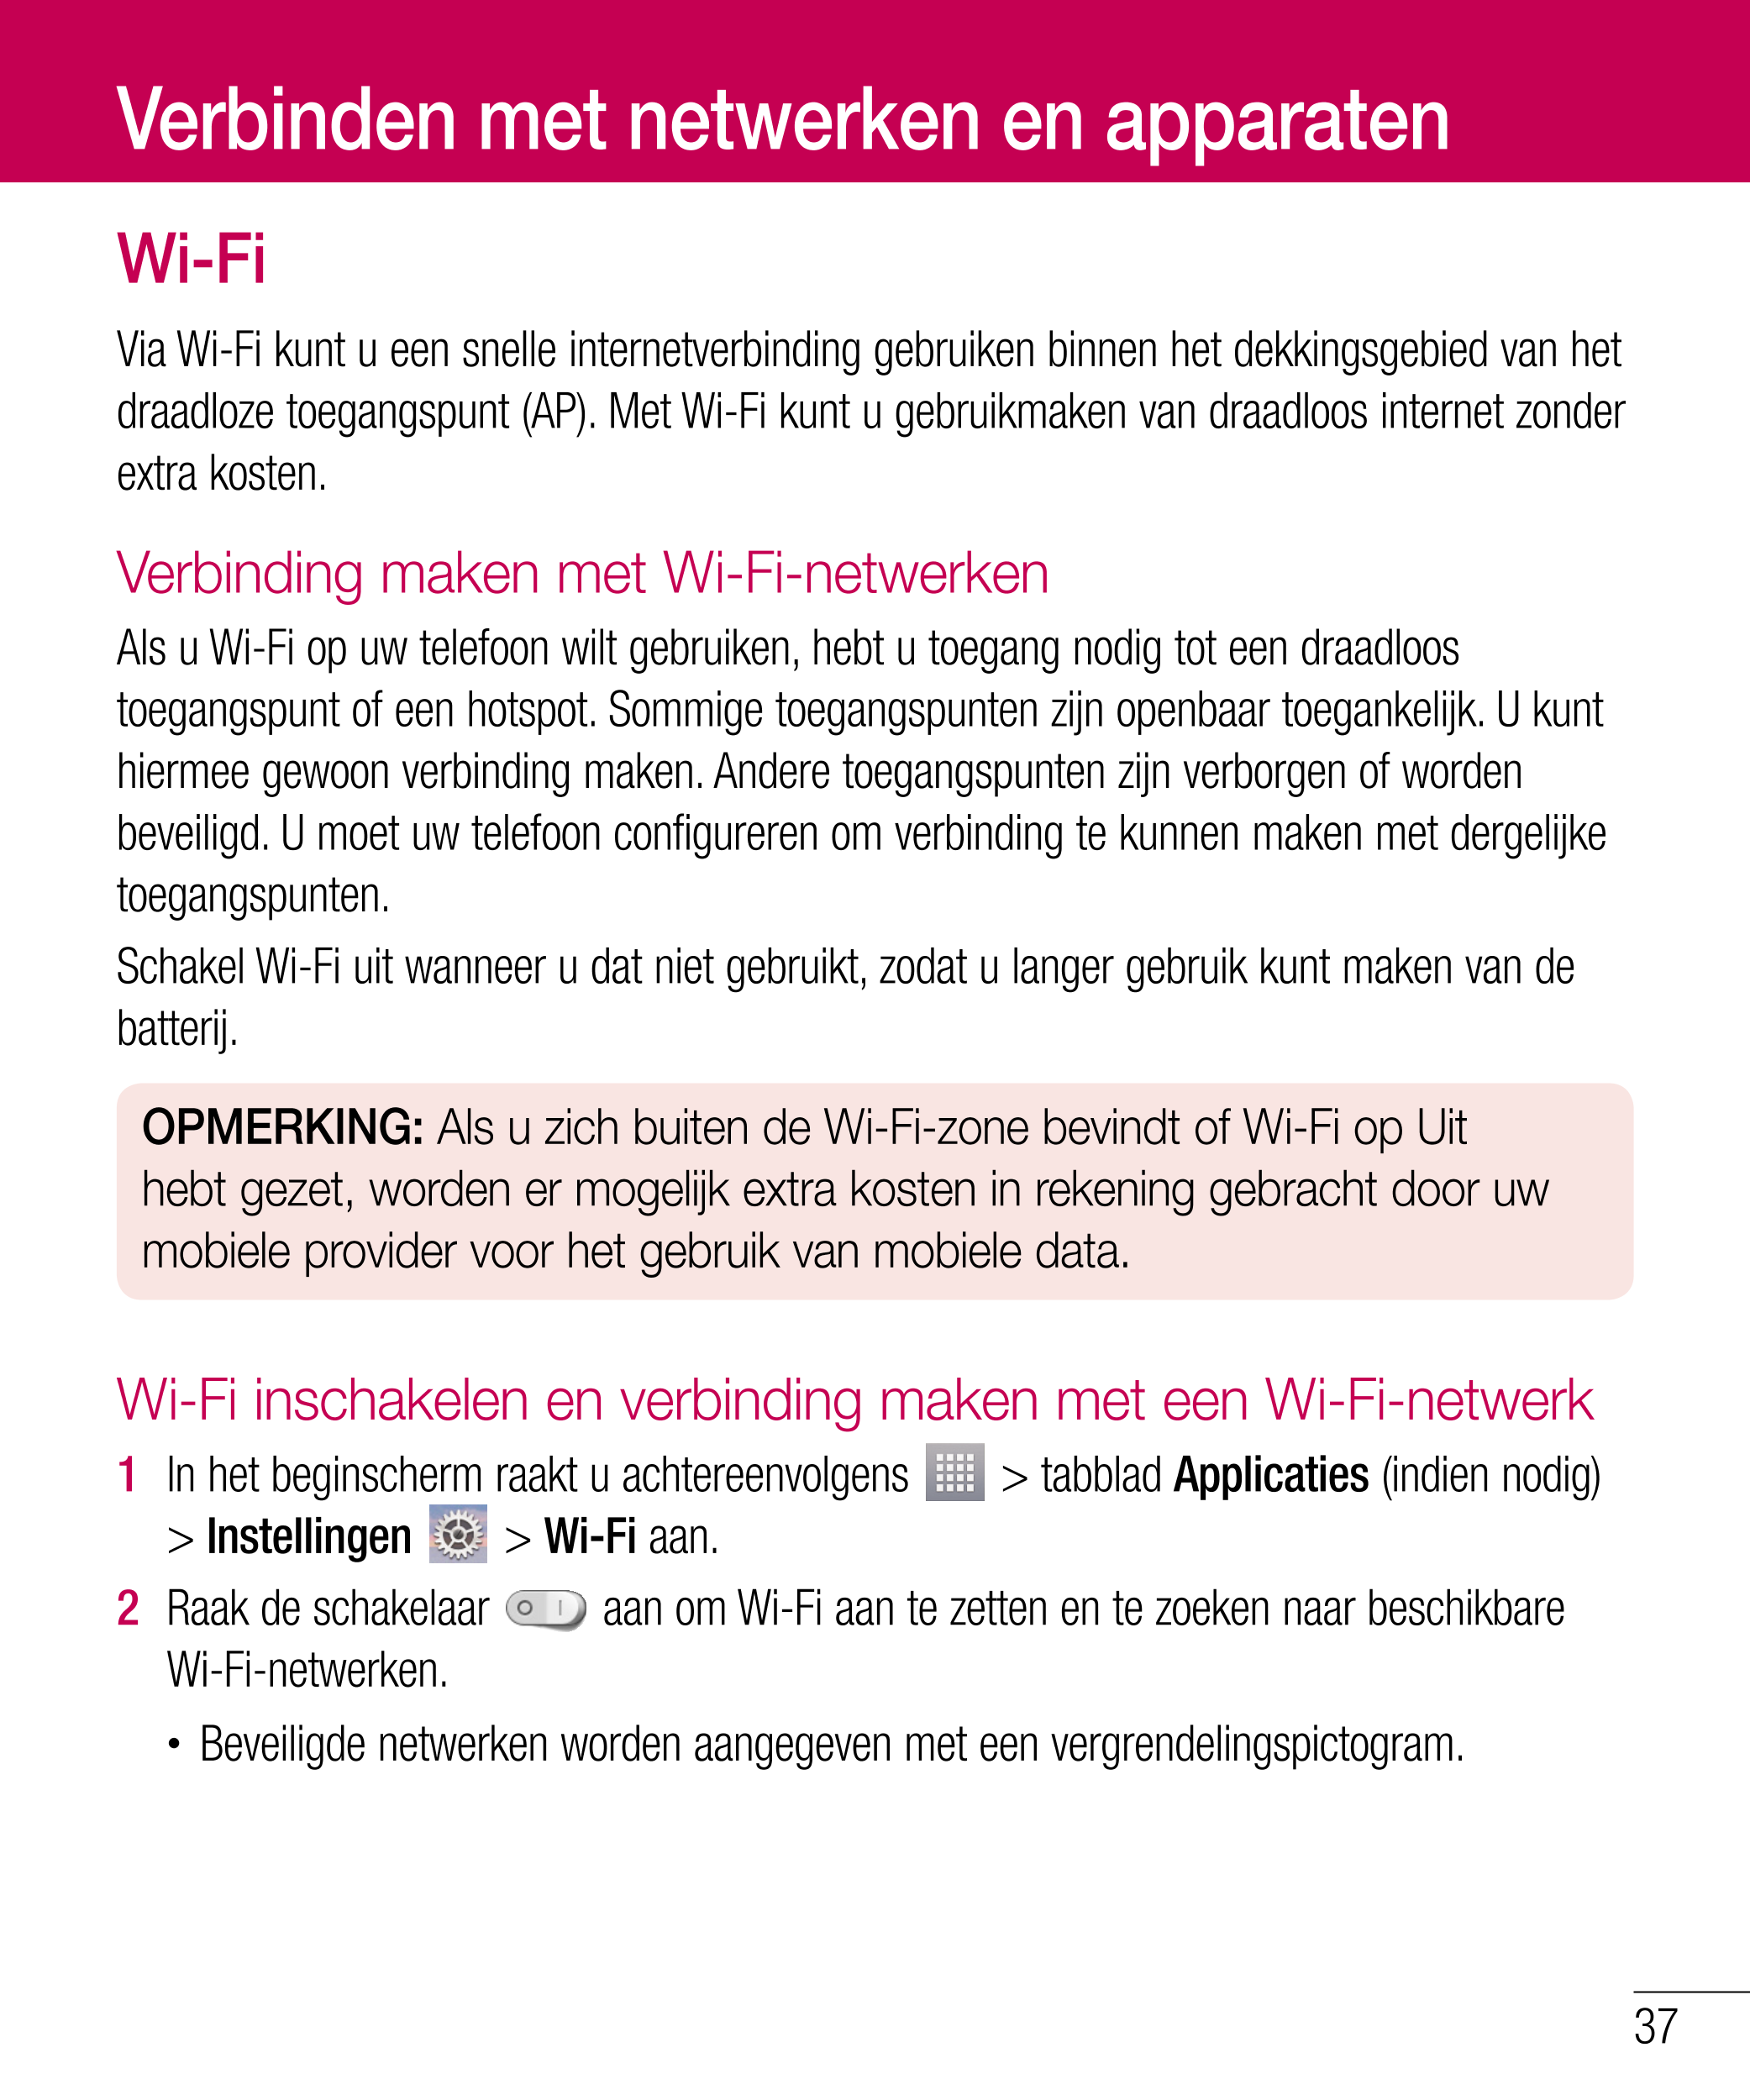 Verbinden met netwerken en apparaten
Wi-Fi
Via Wi-Fi kunt u een snelle internetverbinding gebruiken binnen het dekkingsgebied va